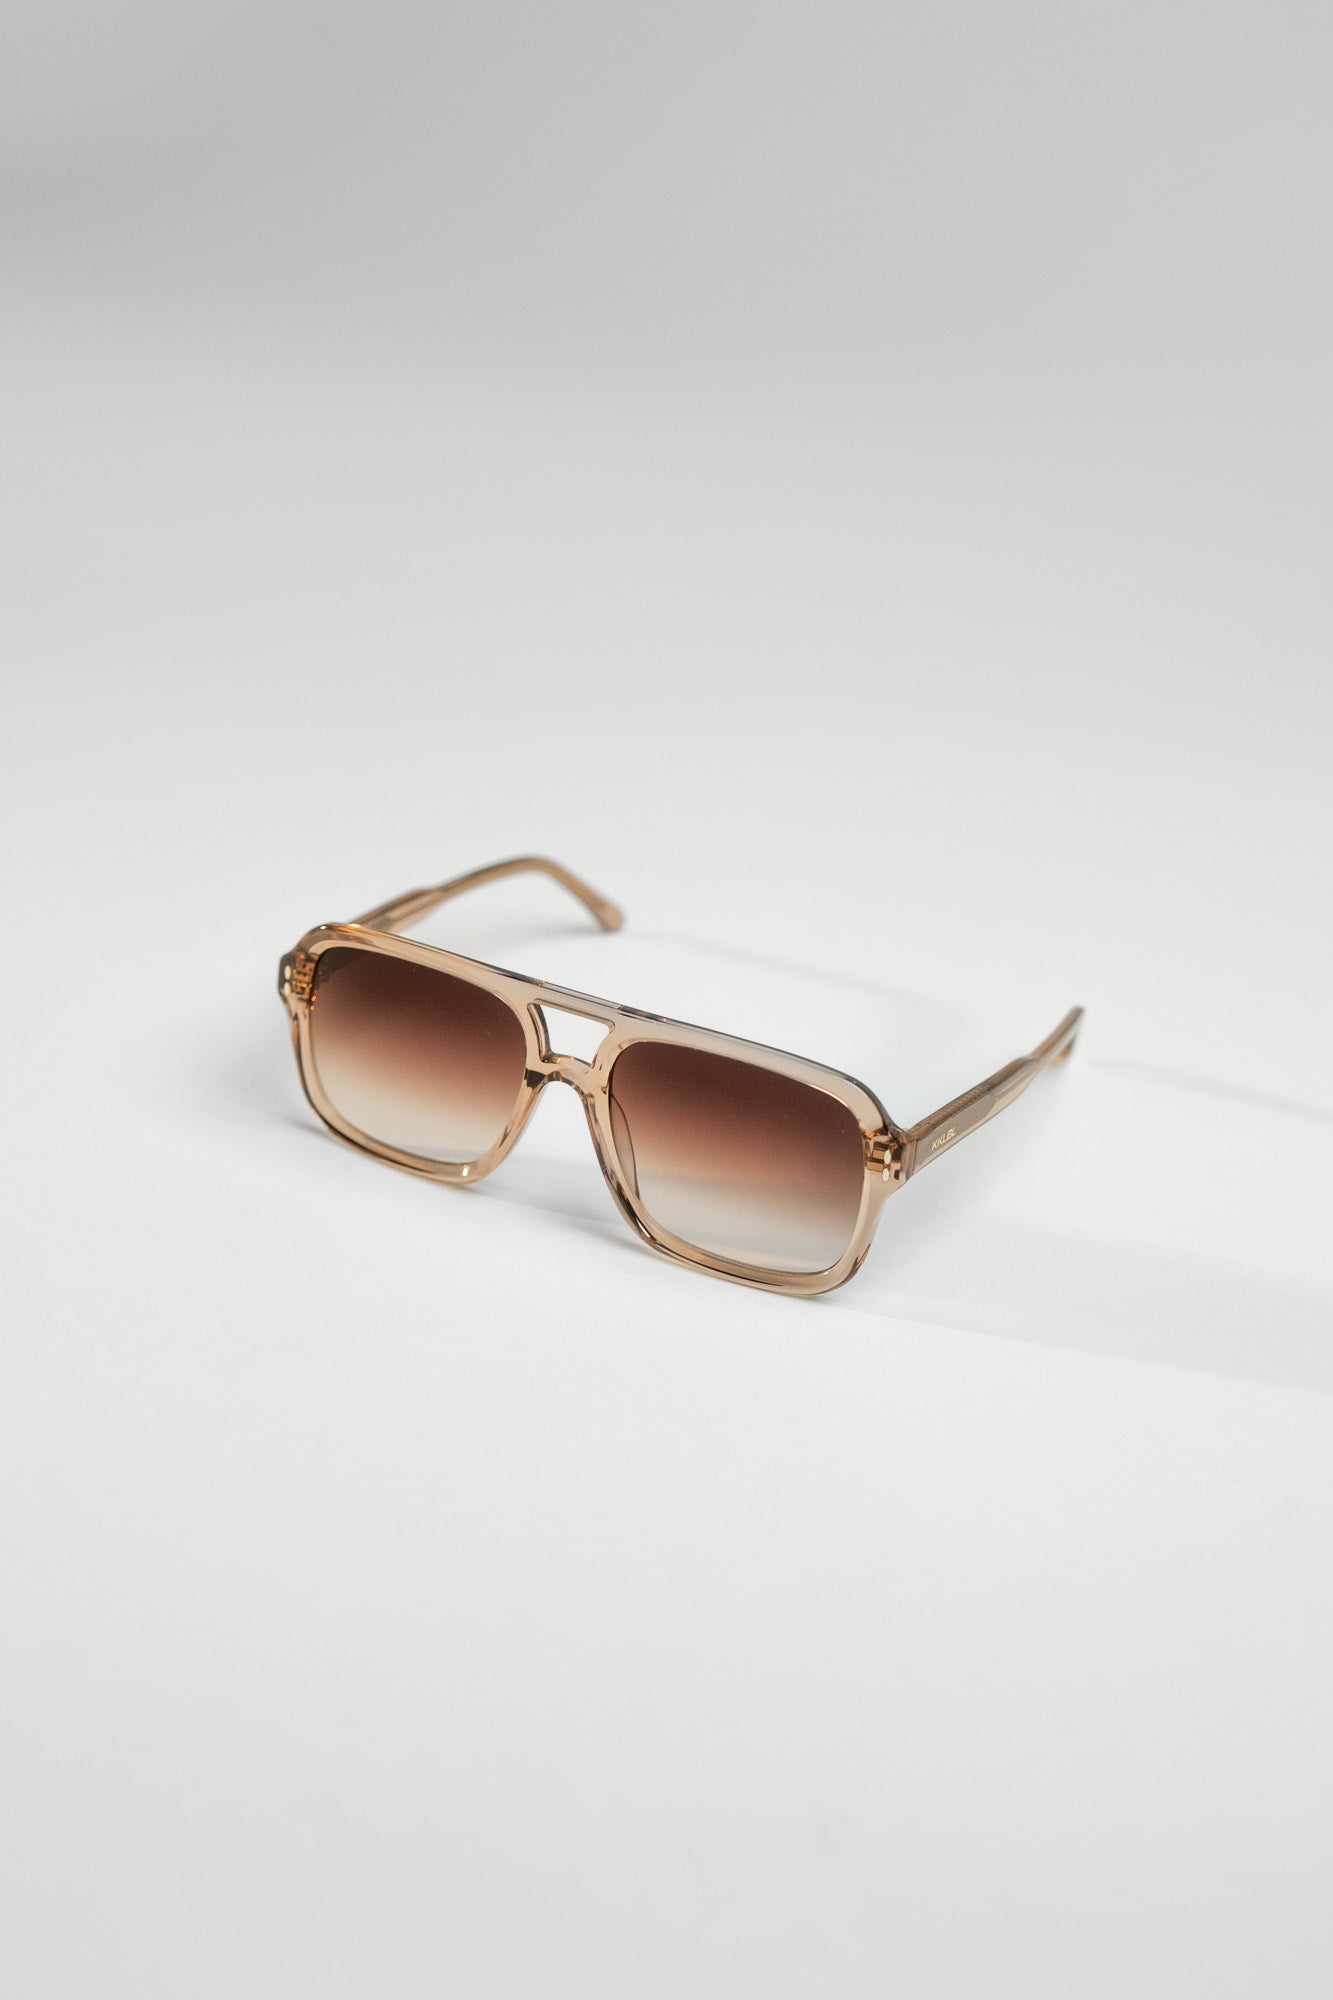 Sunglasses Retro Brown